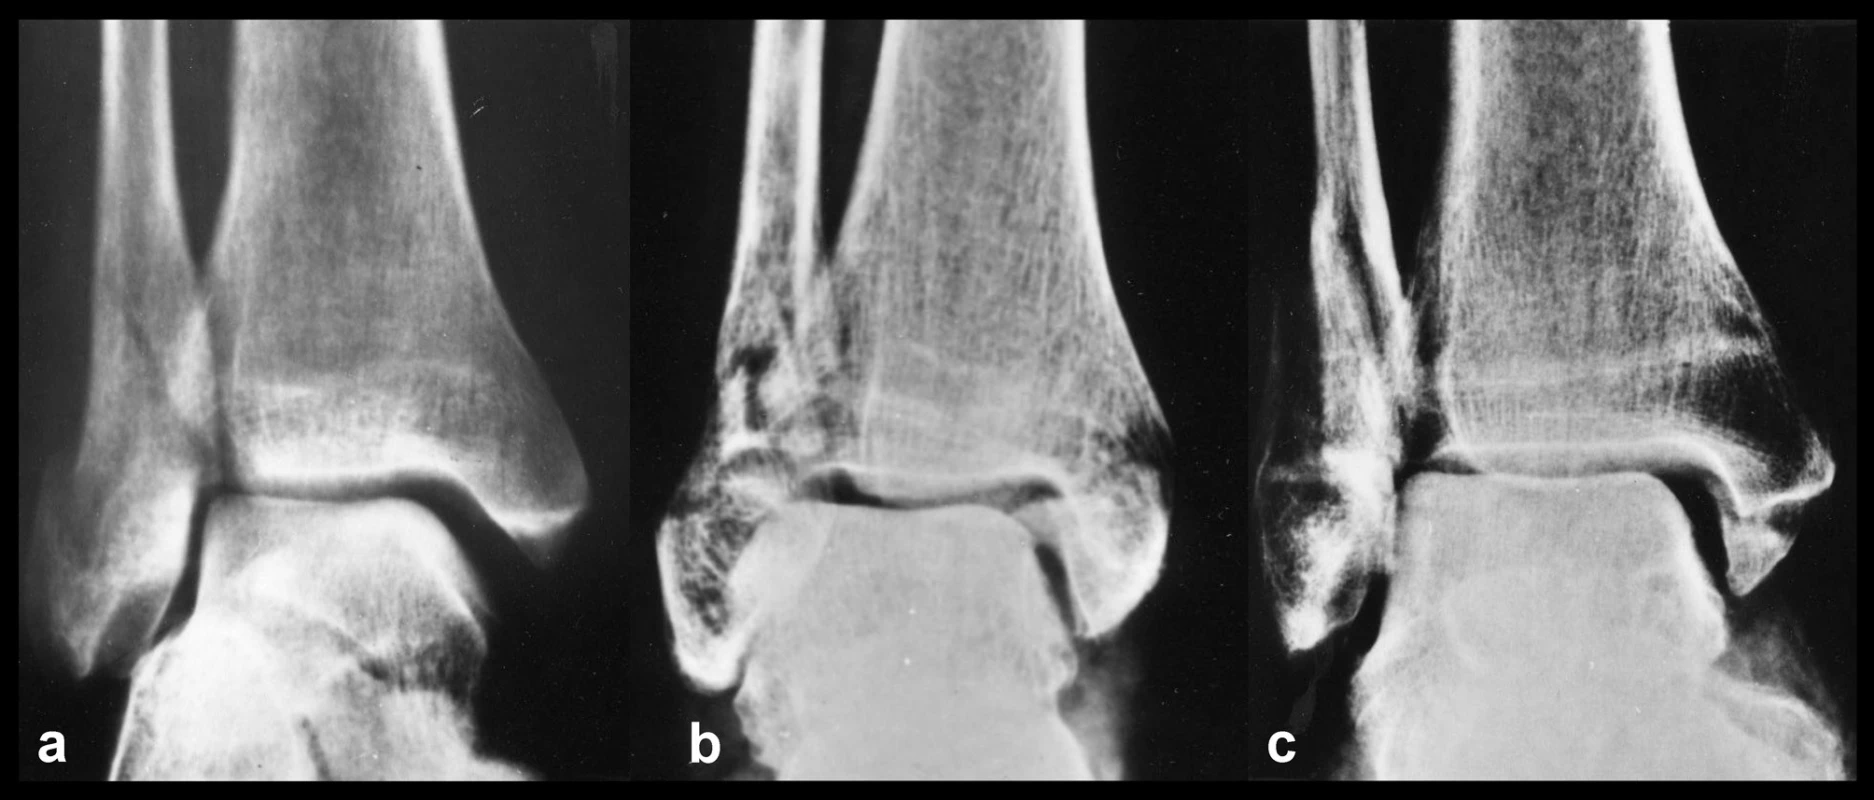 Tři základní typy poranění mediálních struktur
a – ruptura deltového vazu, b – zlomenina vnitřního kotníku, c – kombinované osteo-ligamentózní poranění